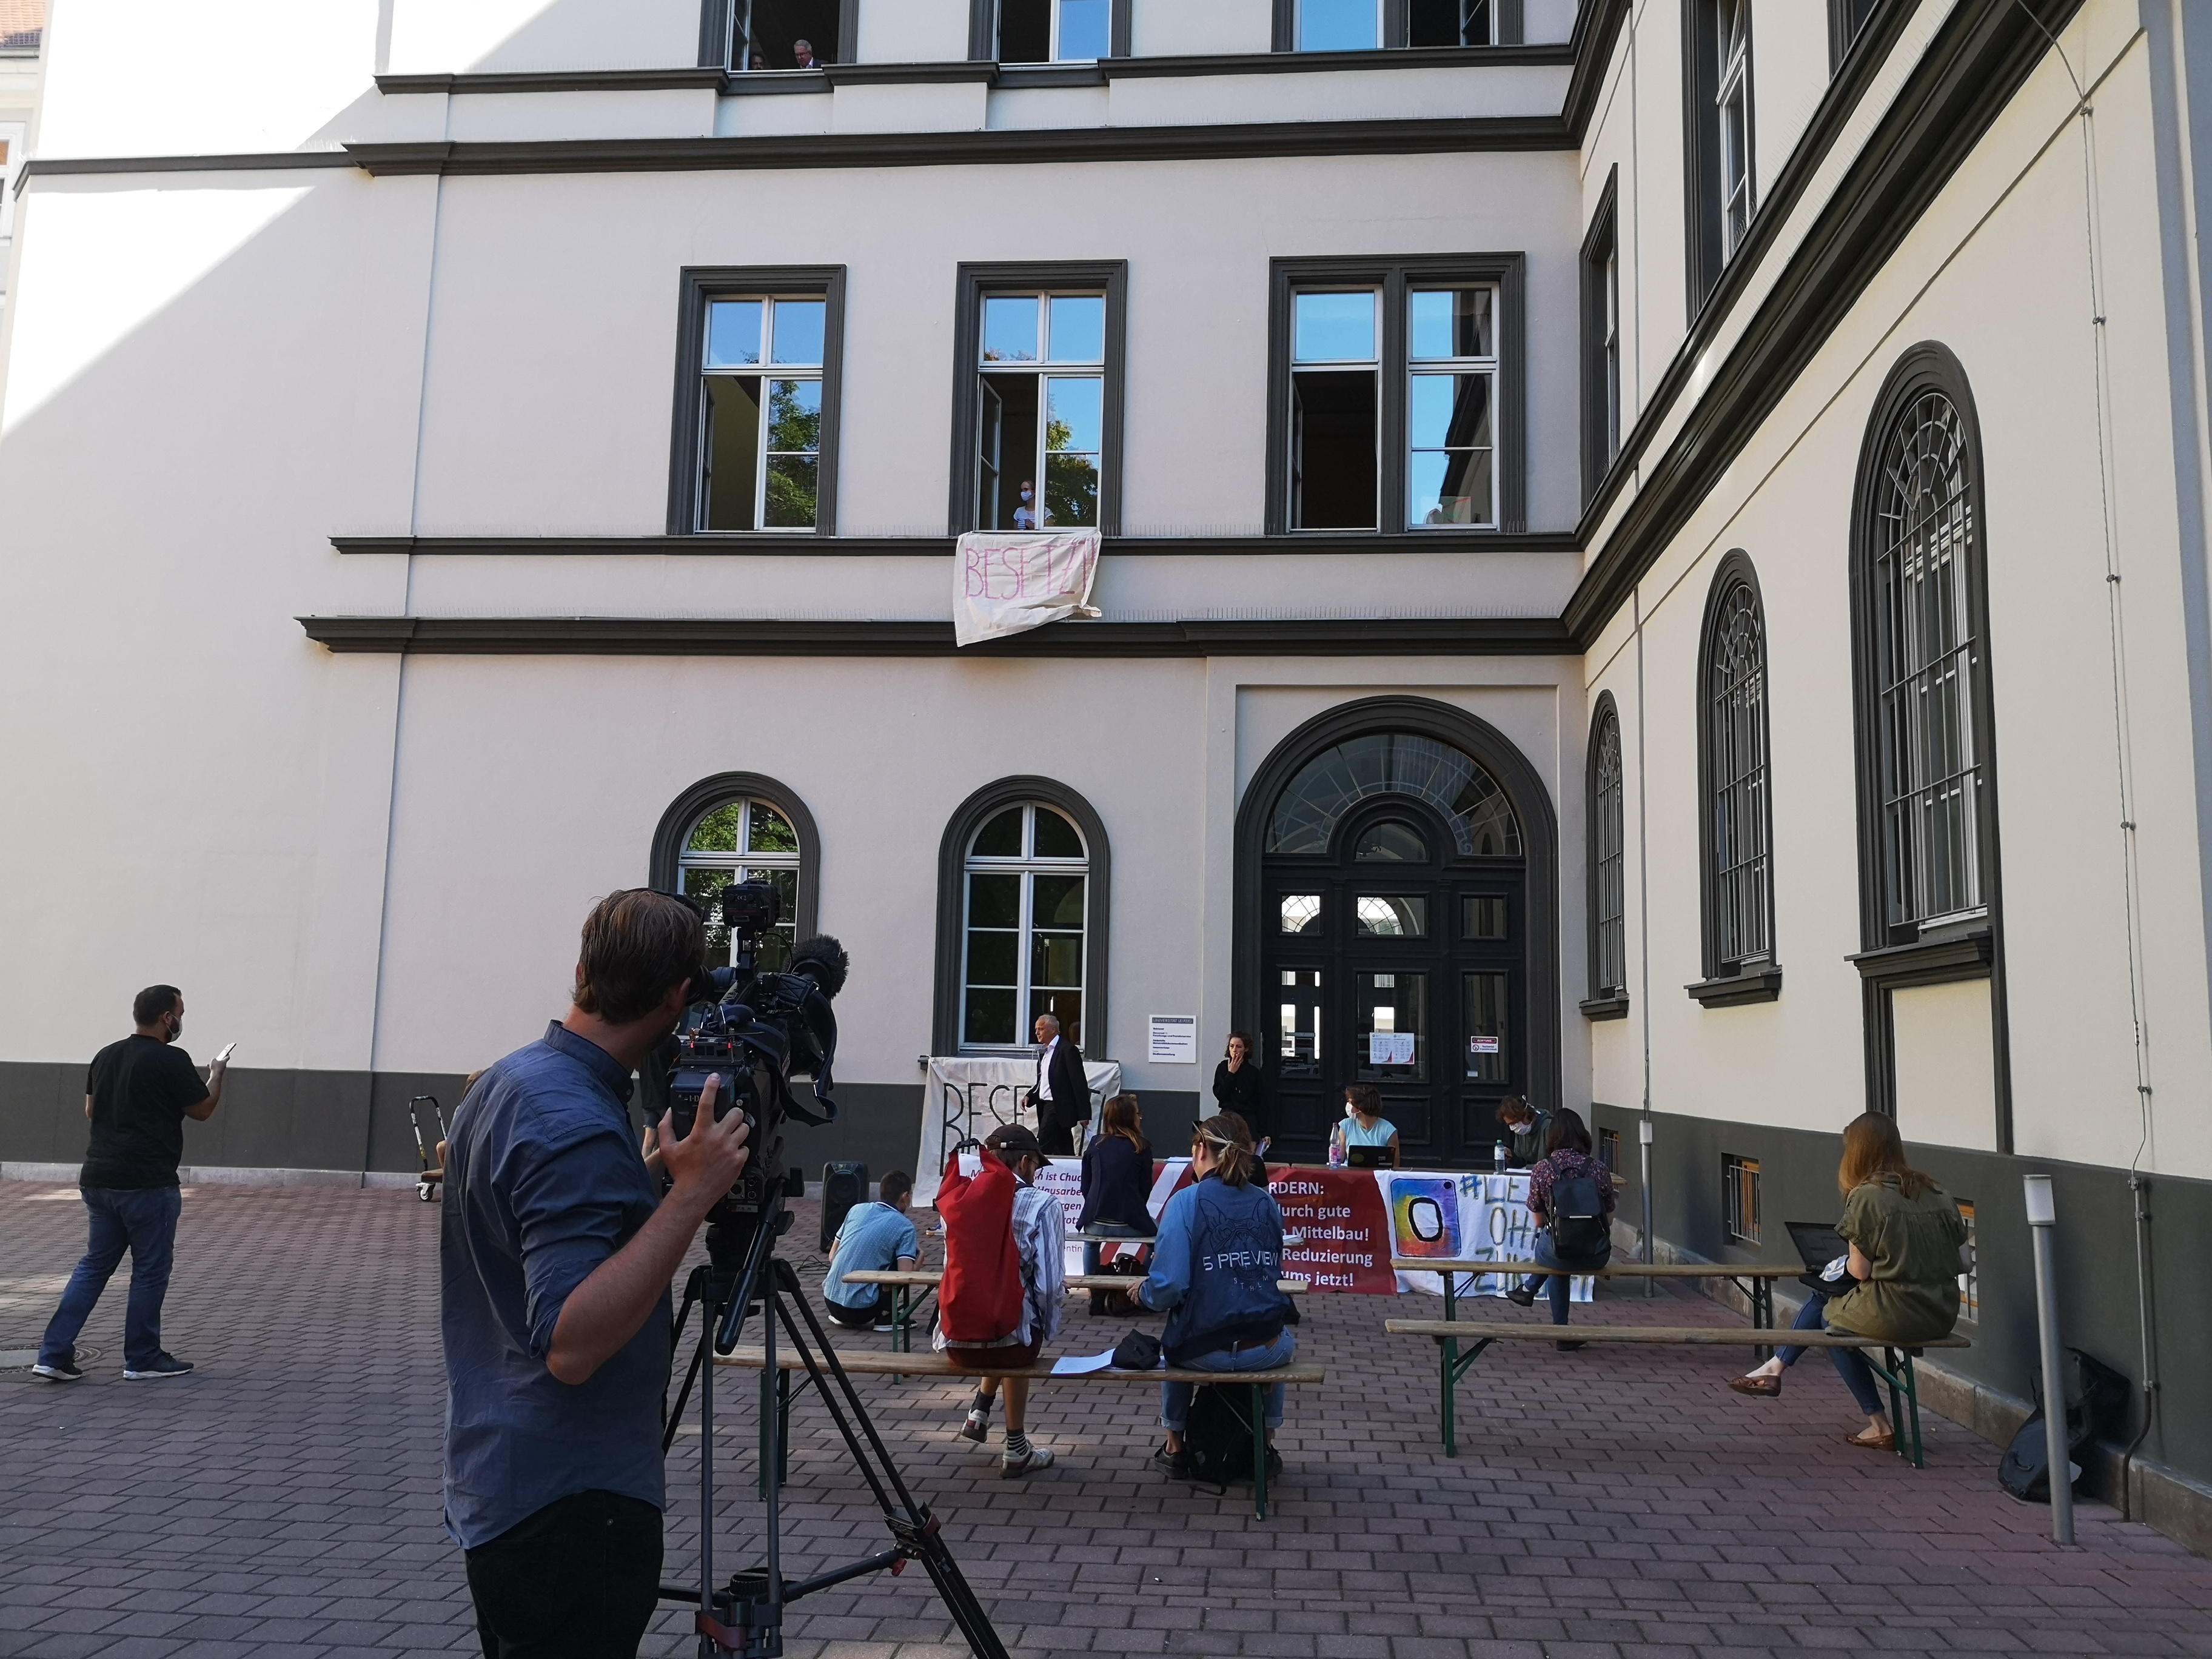 Der Innenhof des Rektorats in der Ritterstraße, im Vordergrund eine Fernsehkamera, im Mittelgrund Bänke, auf denen Journalist*innen sitzen, im Hintergrund das Rektorat, aus dem ein Banner mit der Aufschrift "besetzt" hängt.